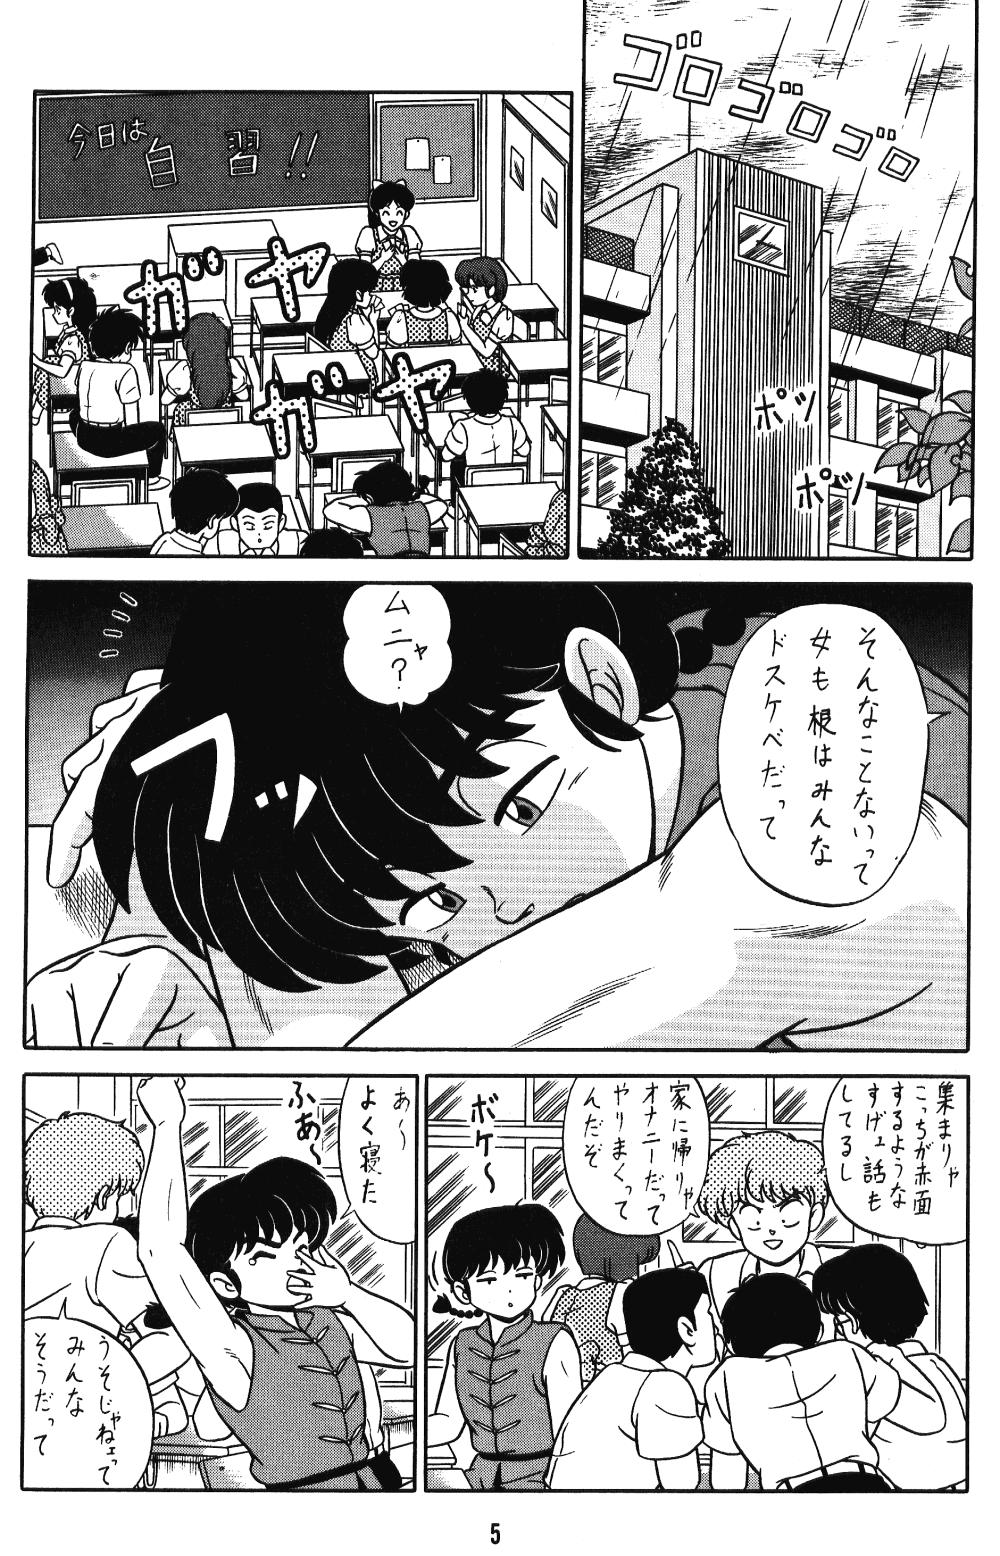 Bulge (C42) [Takashita-ya (Taya Takashi)] Tendou-ke No Musume-tachi Vol. 3 (Ranma 1/2) Ranma 12 Flash 4